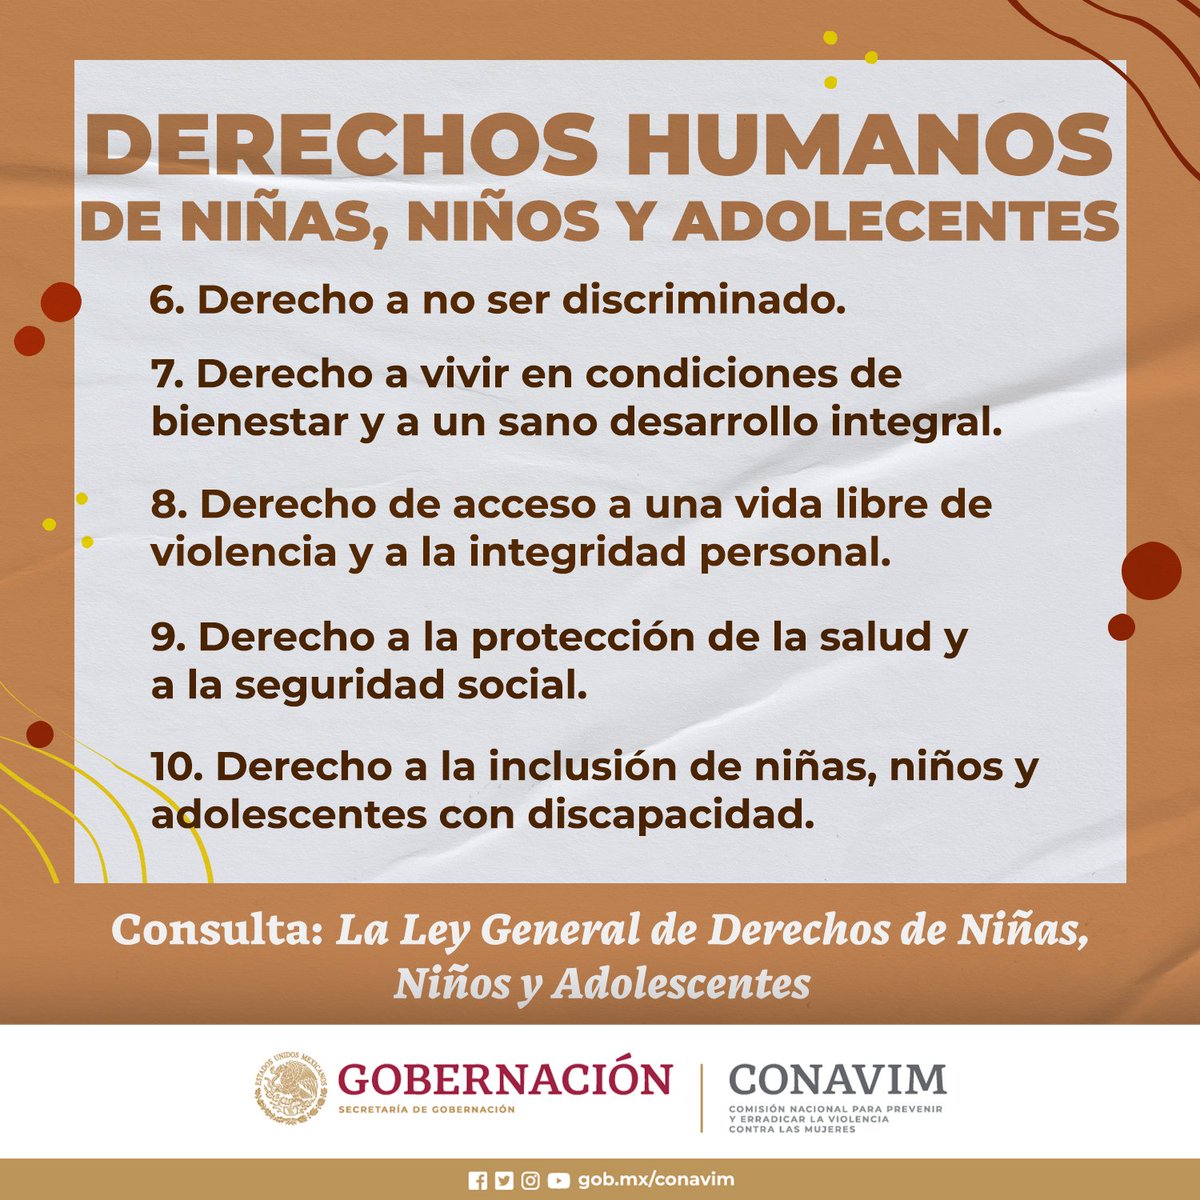 La Ley General de los Derechos de Niñas, Niños y Adolescentes (#LGDNNA) expedida por Decreto presidencial el pasado 3 de diciembre de 2014,y reformada el pasado 17 abril de 2024, garantiza a la niñez y adolescencia mexicana 20 derechos, entre los que se encuentran: